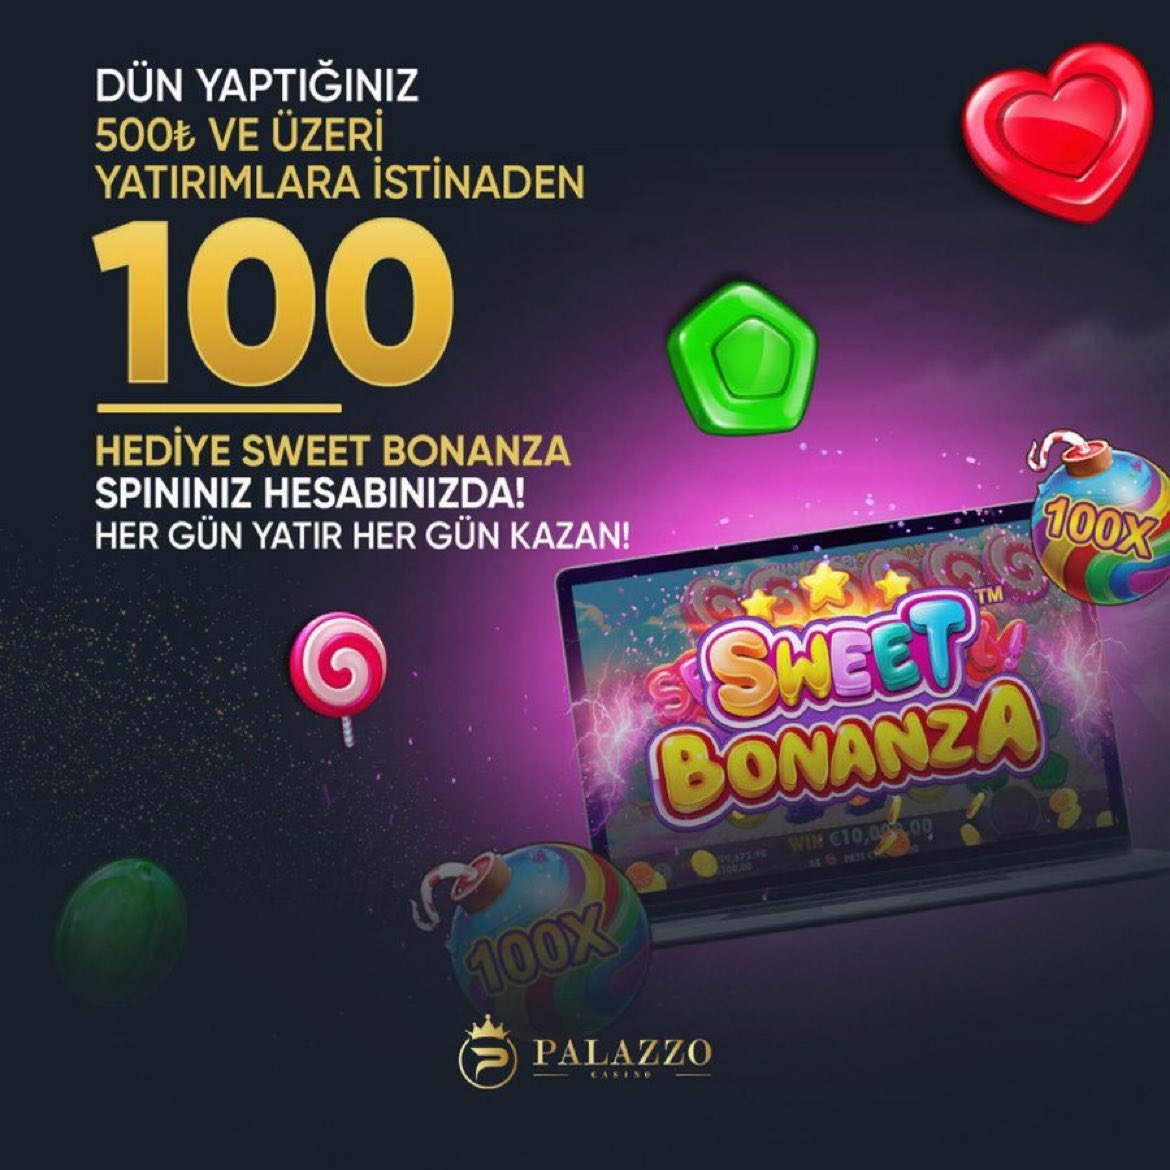 🍭 Palazzo Casino’da dün gün içerisinde 500 TL ve üzeri yatırım yapan tüm üyelerimize Sweet Bonanza’da geçerli 100 FreeSpin eklemeleri yapılmıştır. Her yatırımı kazanca dönüştürmeye devam ediyoruz! 📲 bit.ly/3DorpGd